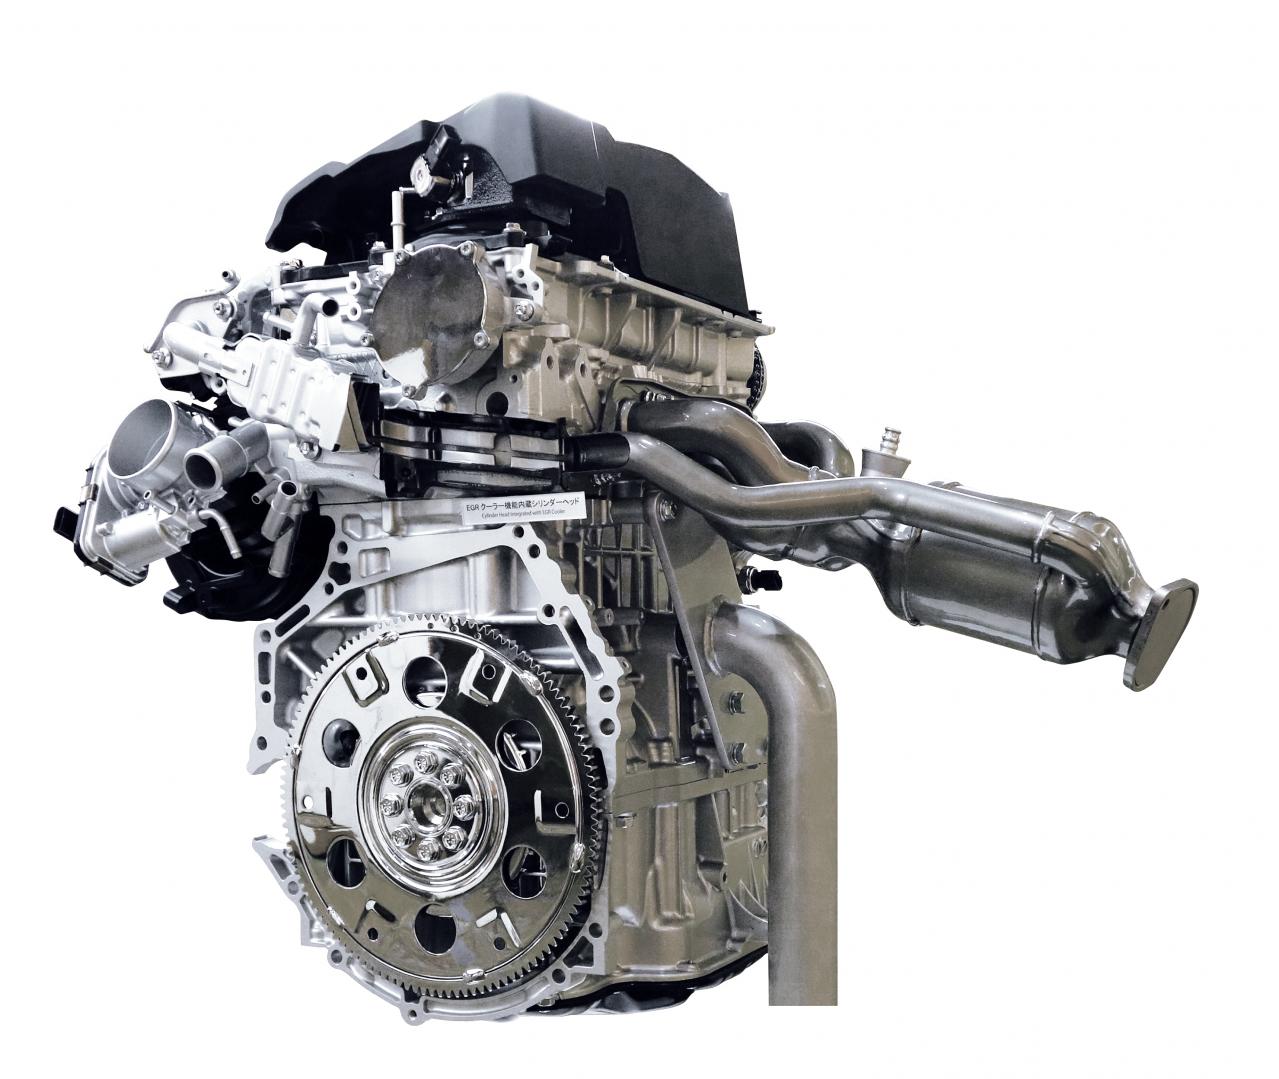 トヨタ新型ハリアーのエンジン2種をご紹介 5a Fxsとma Fks ともに超高効率の新世代エンジン Suv クロカン Motor Fan モーターファン